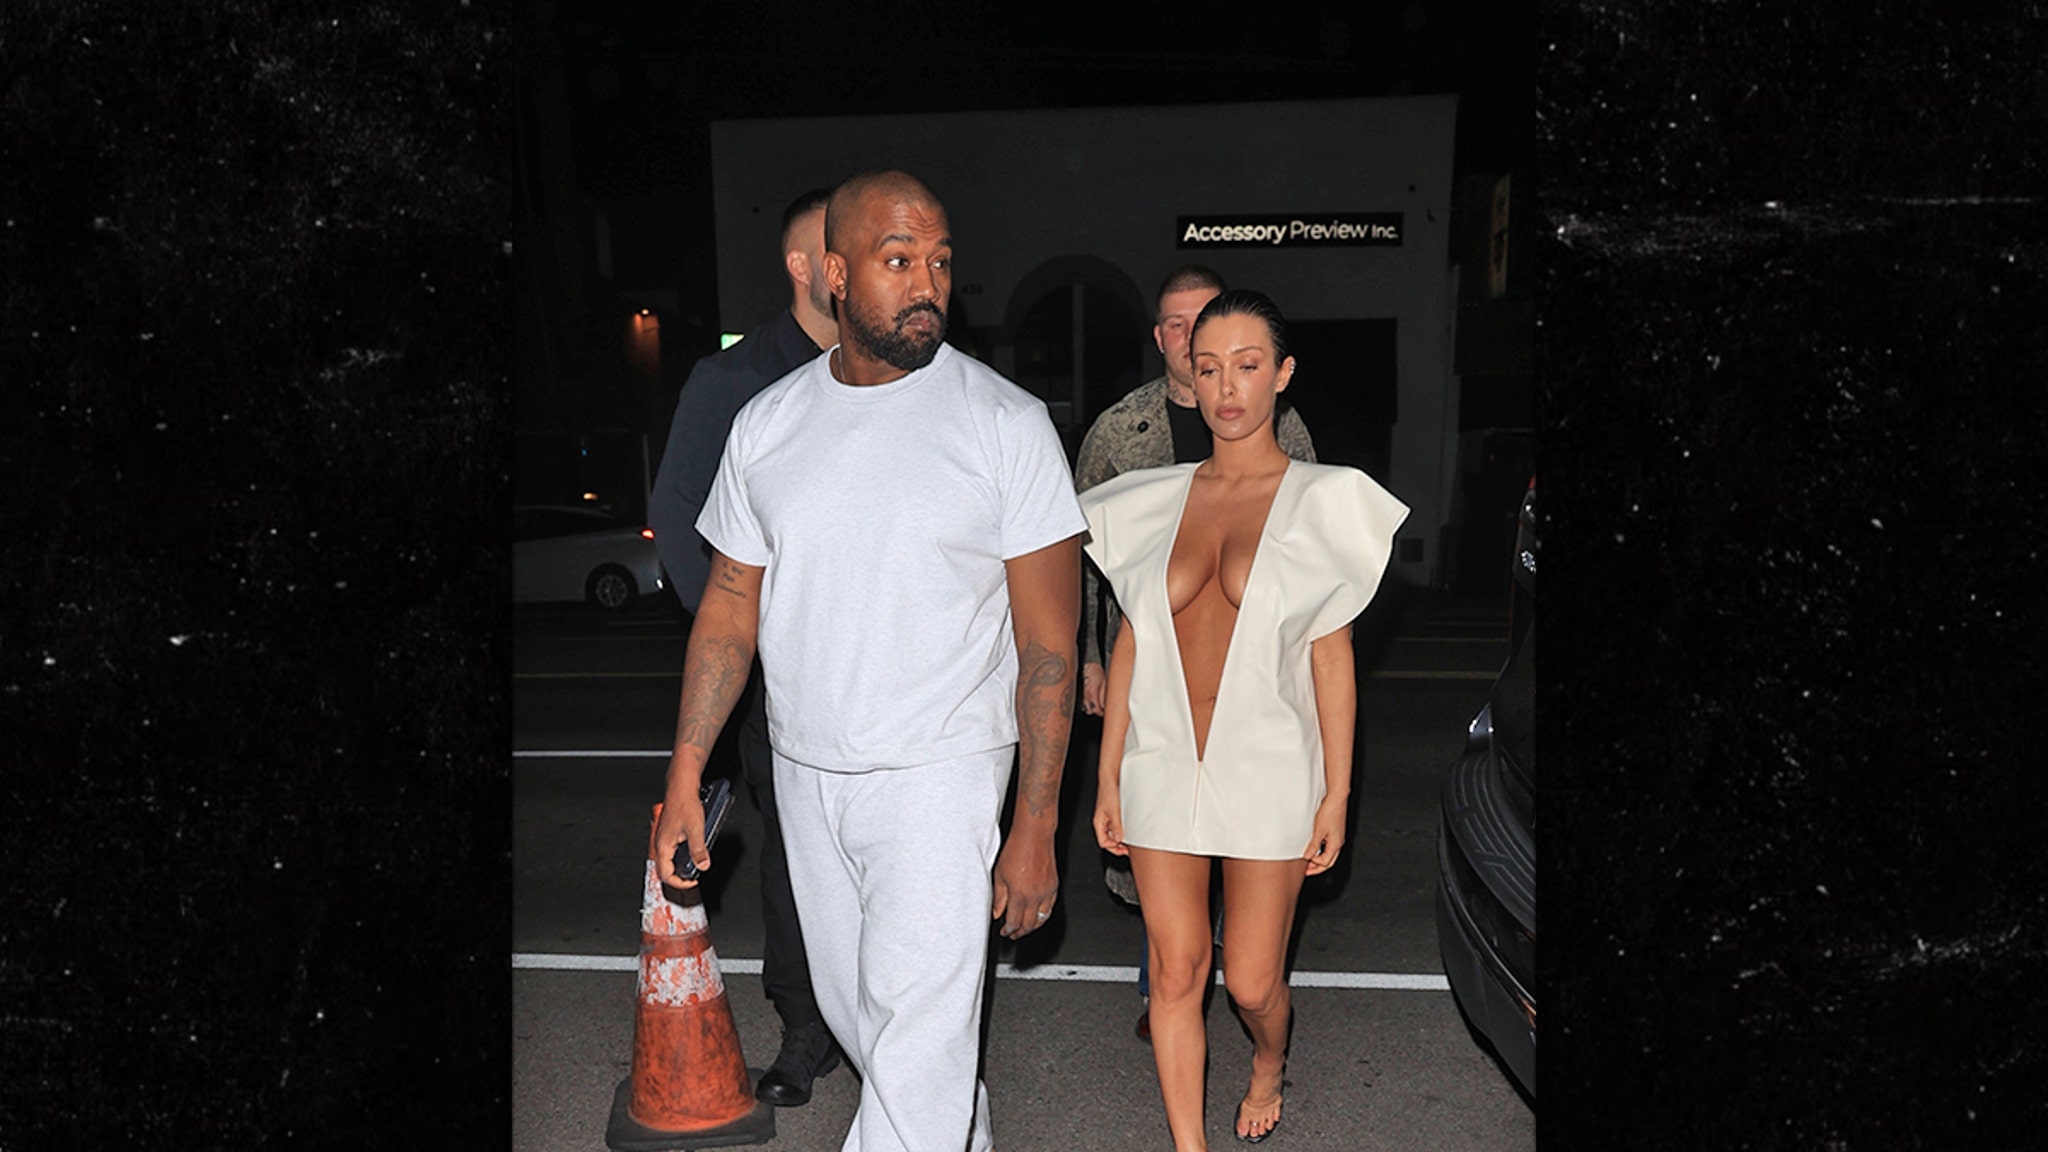 Bianca Censori incarne le style de Kim Kardashian avec Kanye lors d’une soirée à Los Angeles